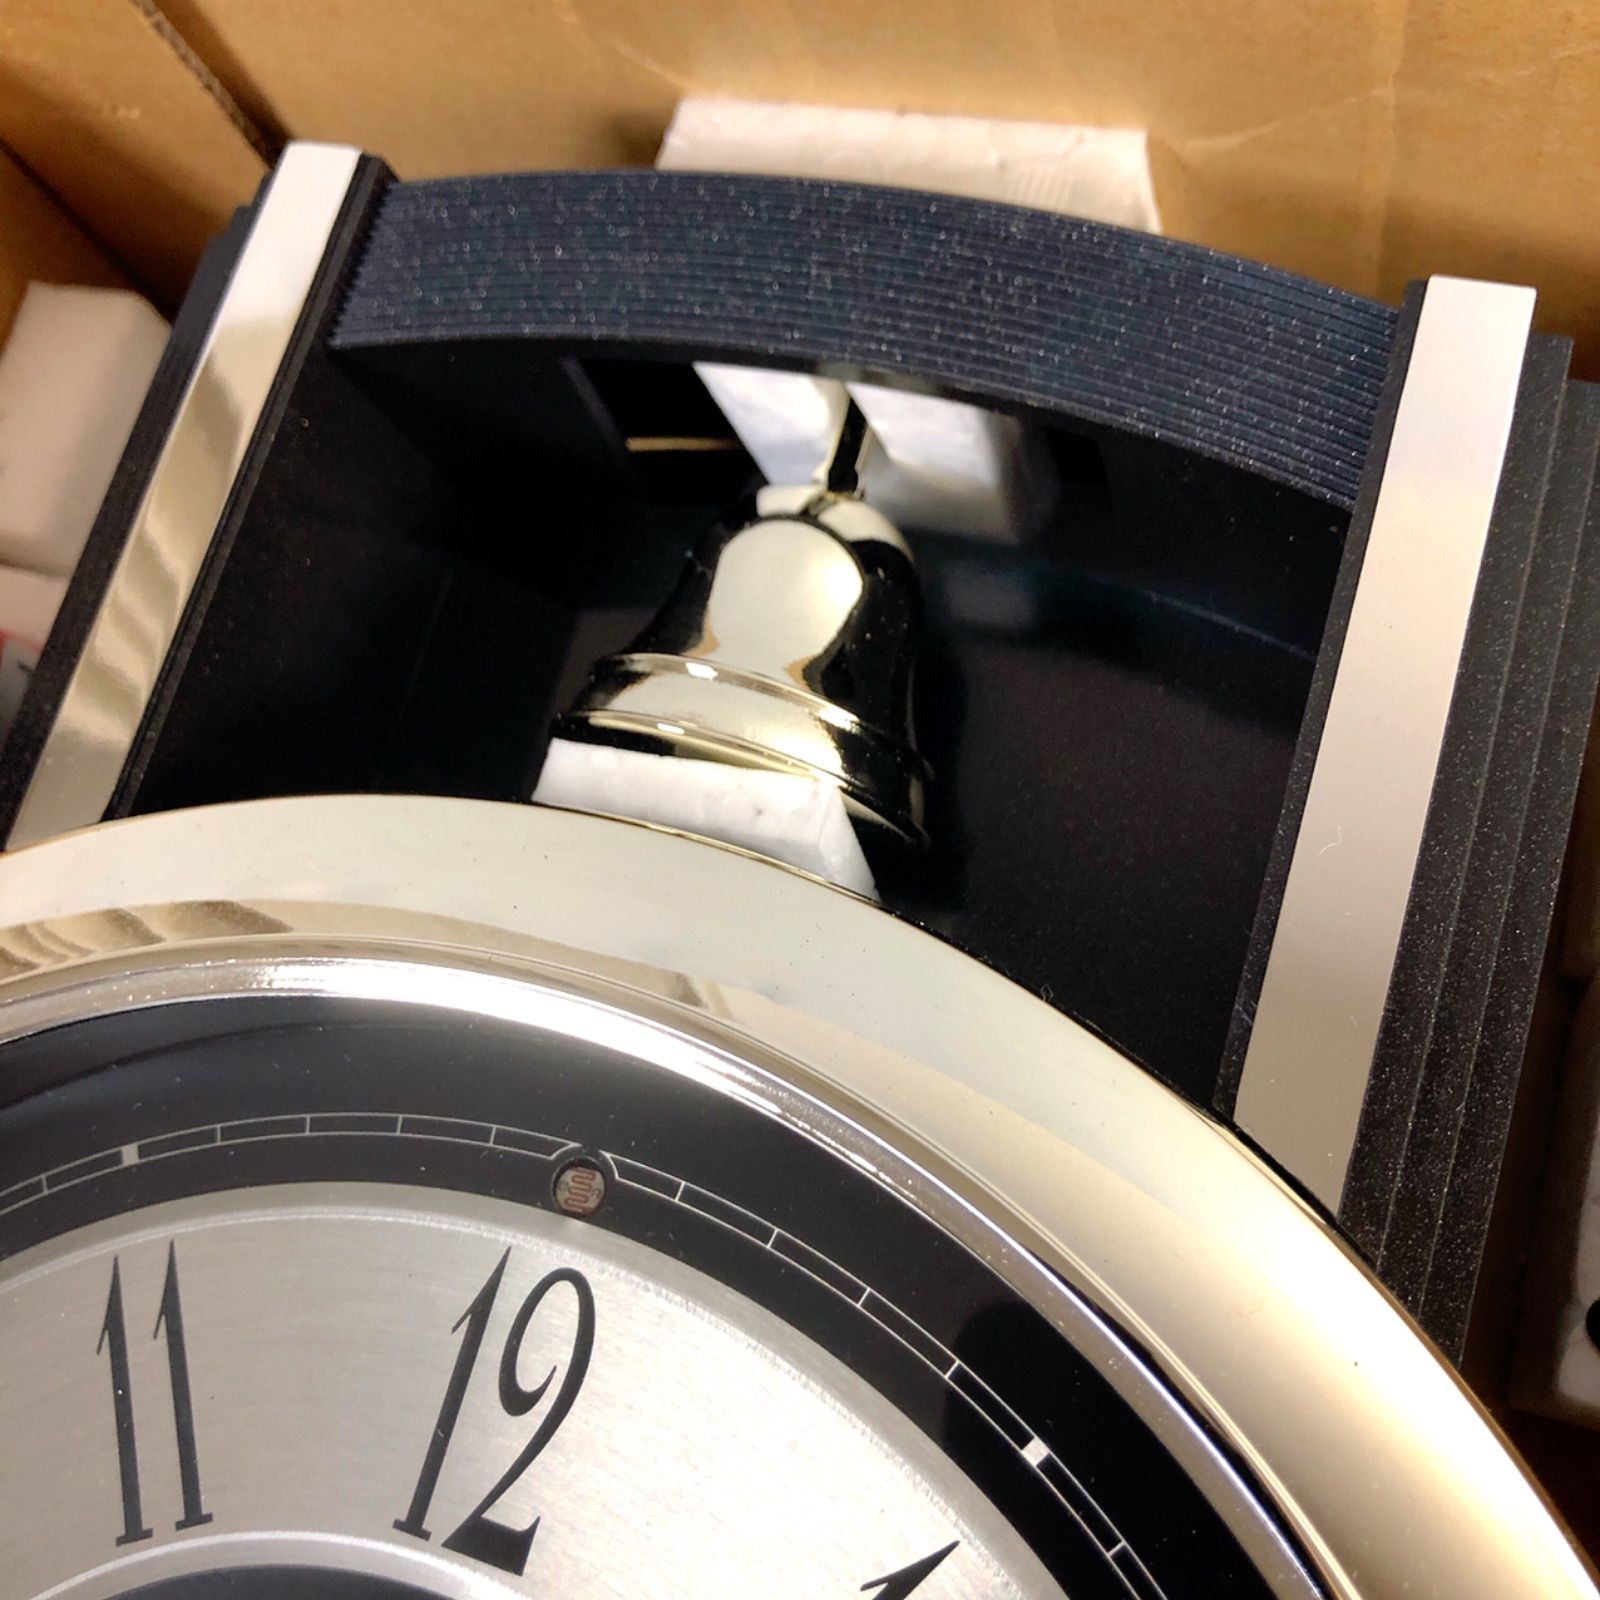 新品未使用 動作確認済 CITIZEN シチズン 掛け時計 振り子時計 フレグランス 90年代 希少 J0002255